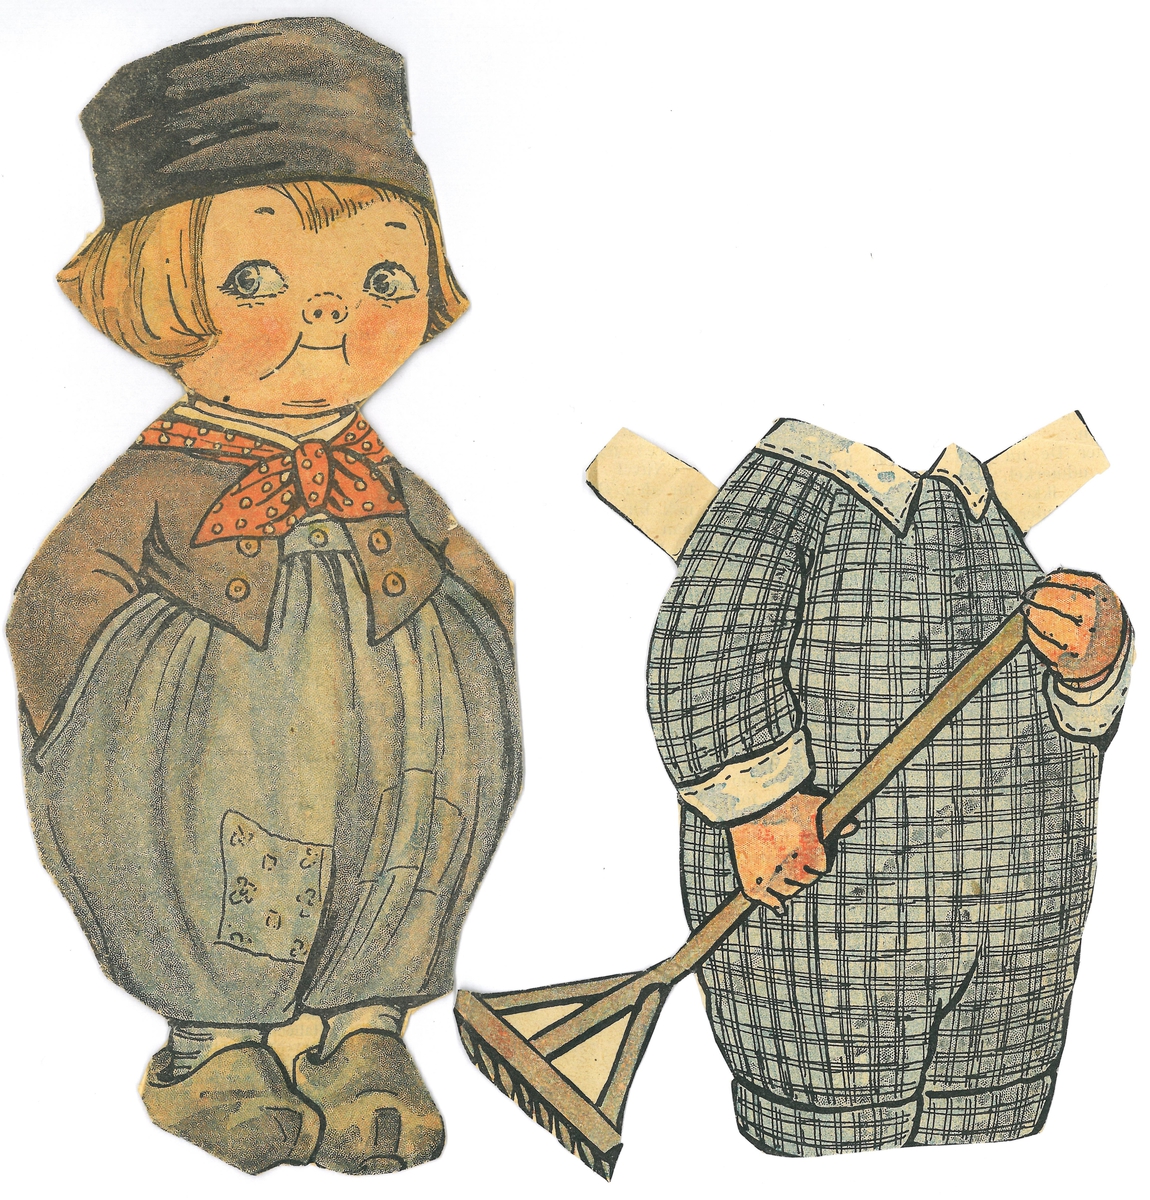 Papirdukke med klær som er klipt ut av avis/magasin. Dukken er montert på papp.

A- dukke, gutt med hollenderdrakt, tresko og lue, 19,5 x 8,5 cm
B- rutete drakt med rive, 12,5 x 10 cm